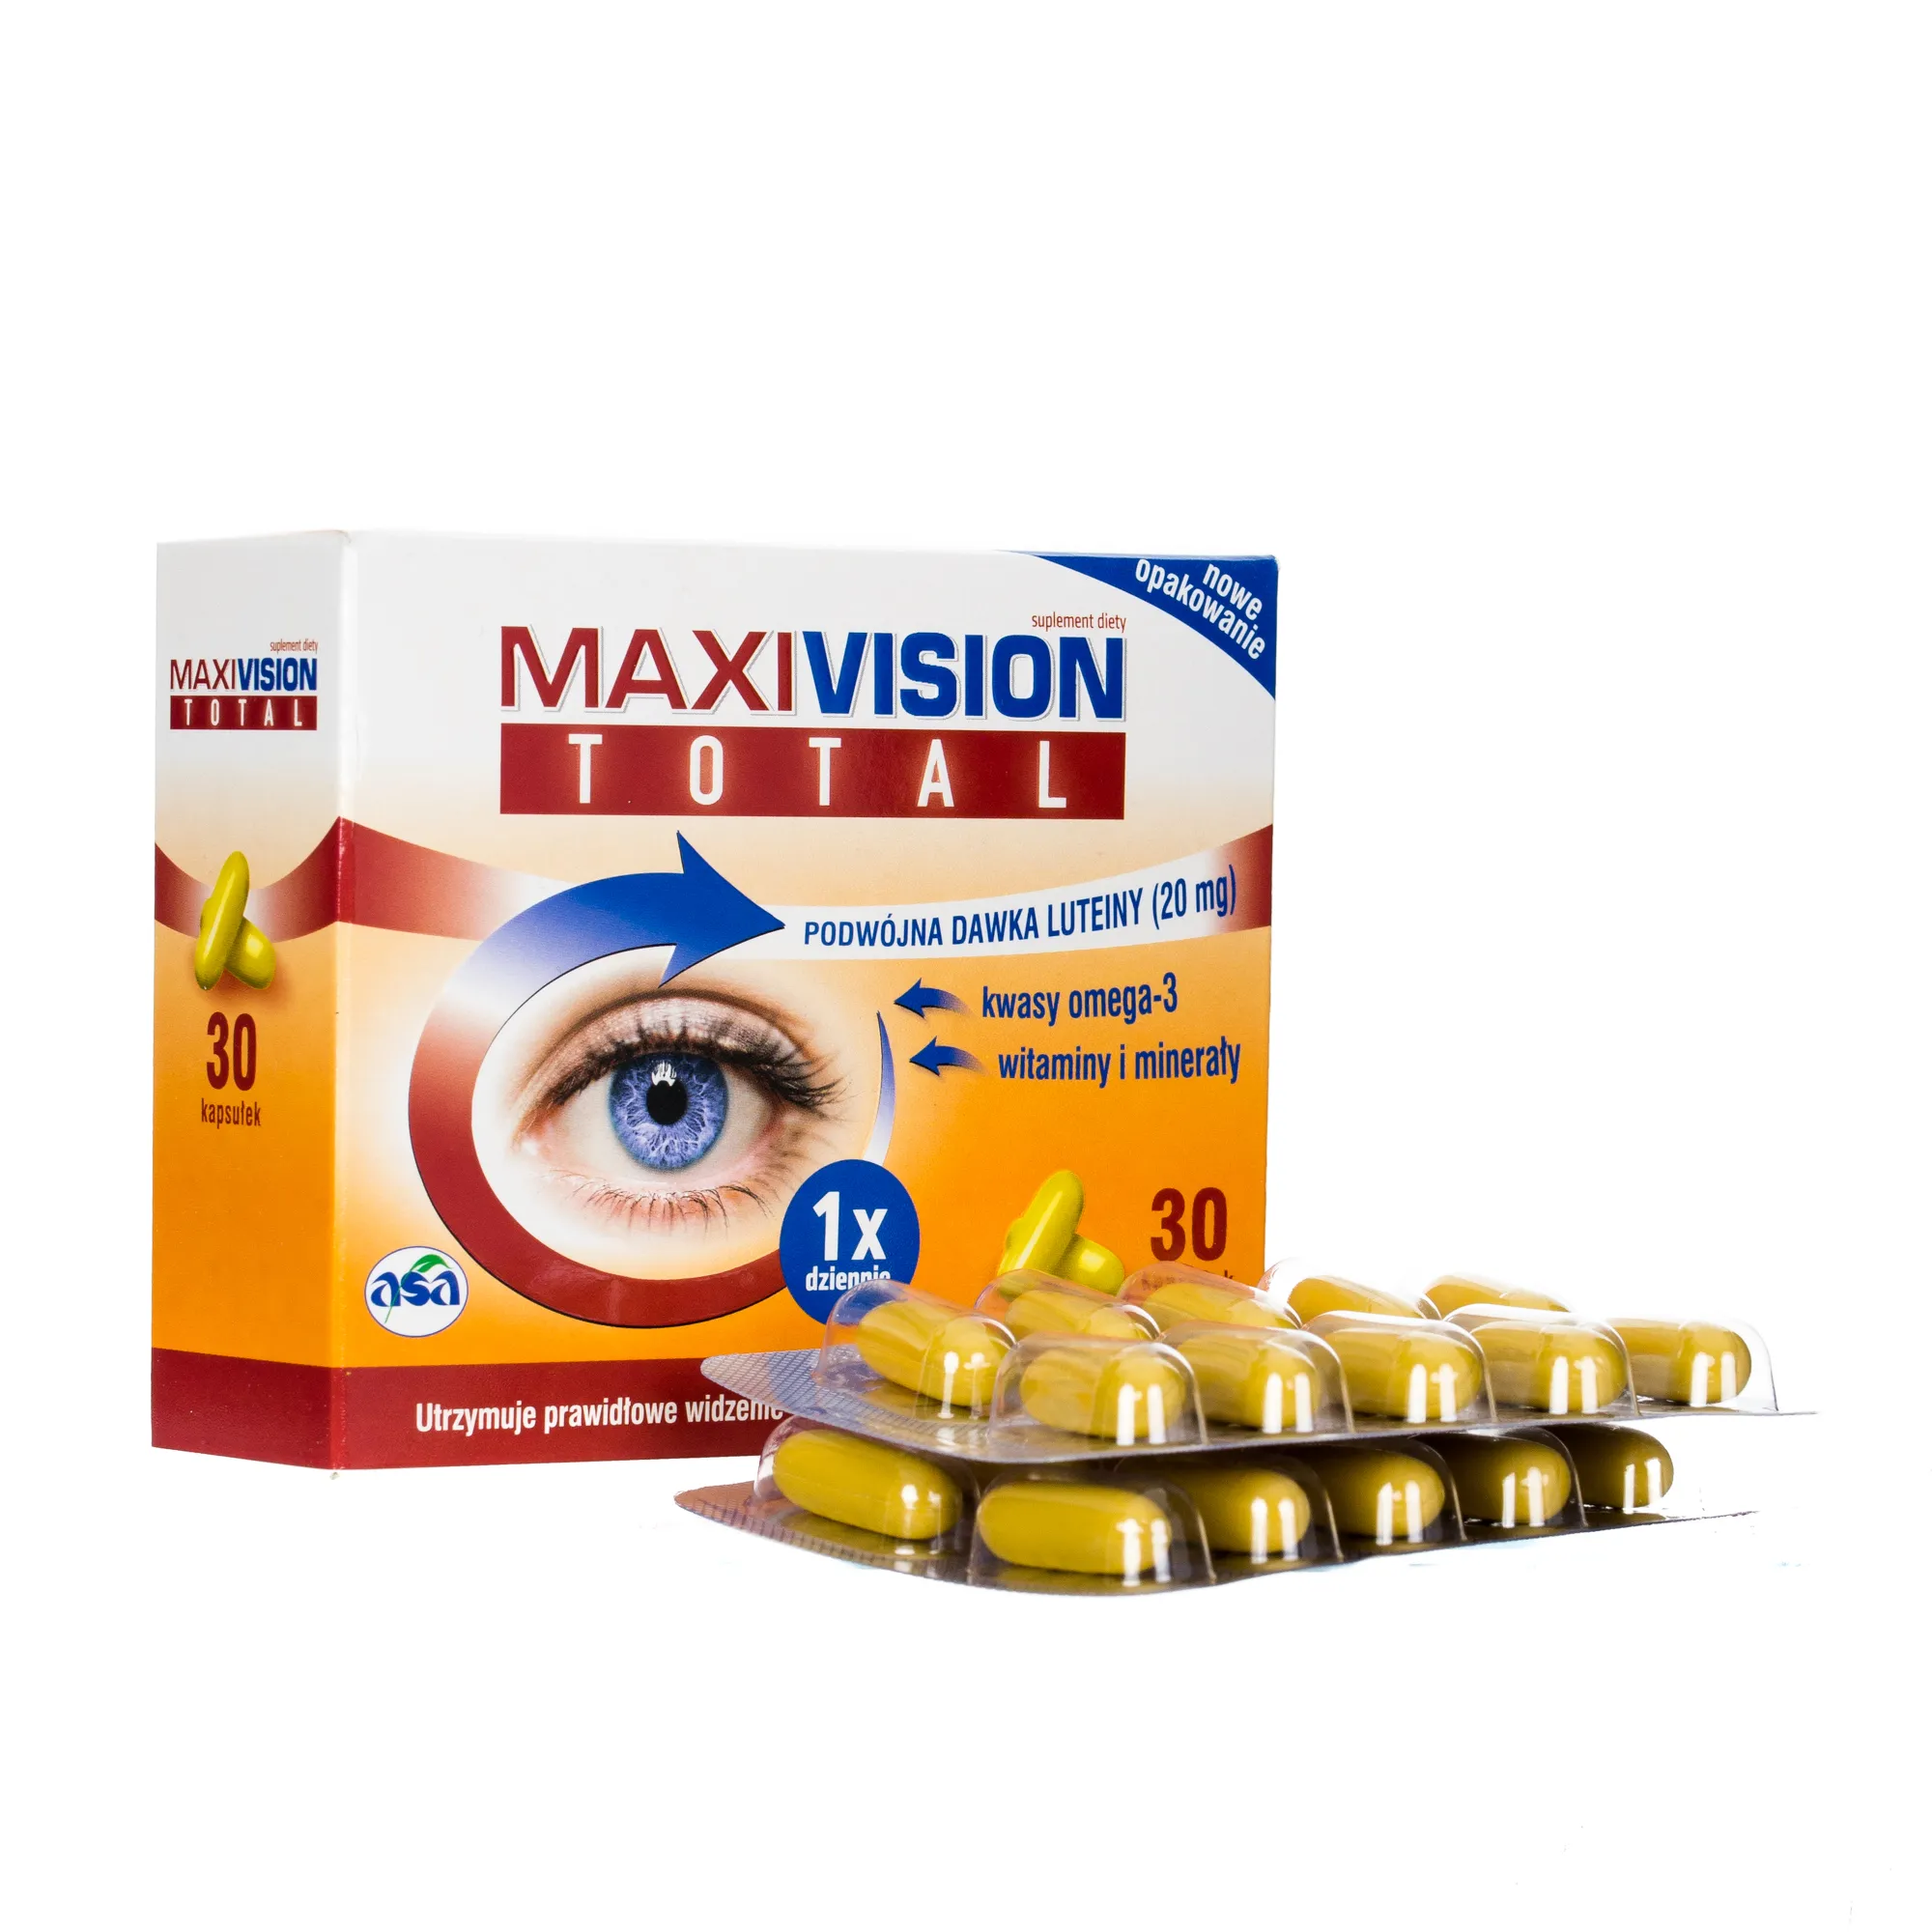 MaxiVision Total - suplement diety z podwójną dawką luteiny, 30 kapsułek 